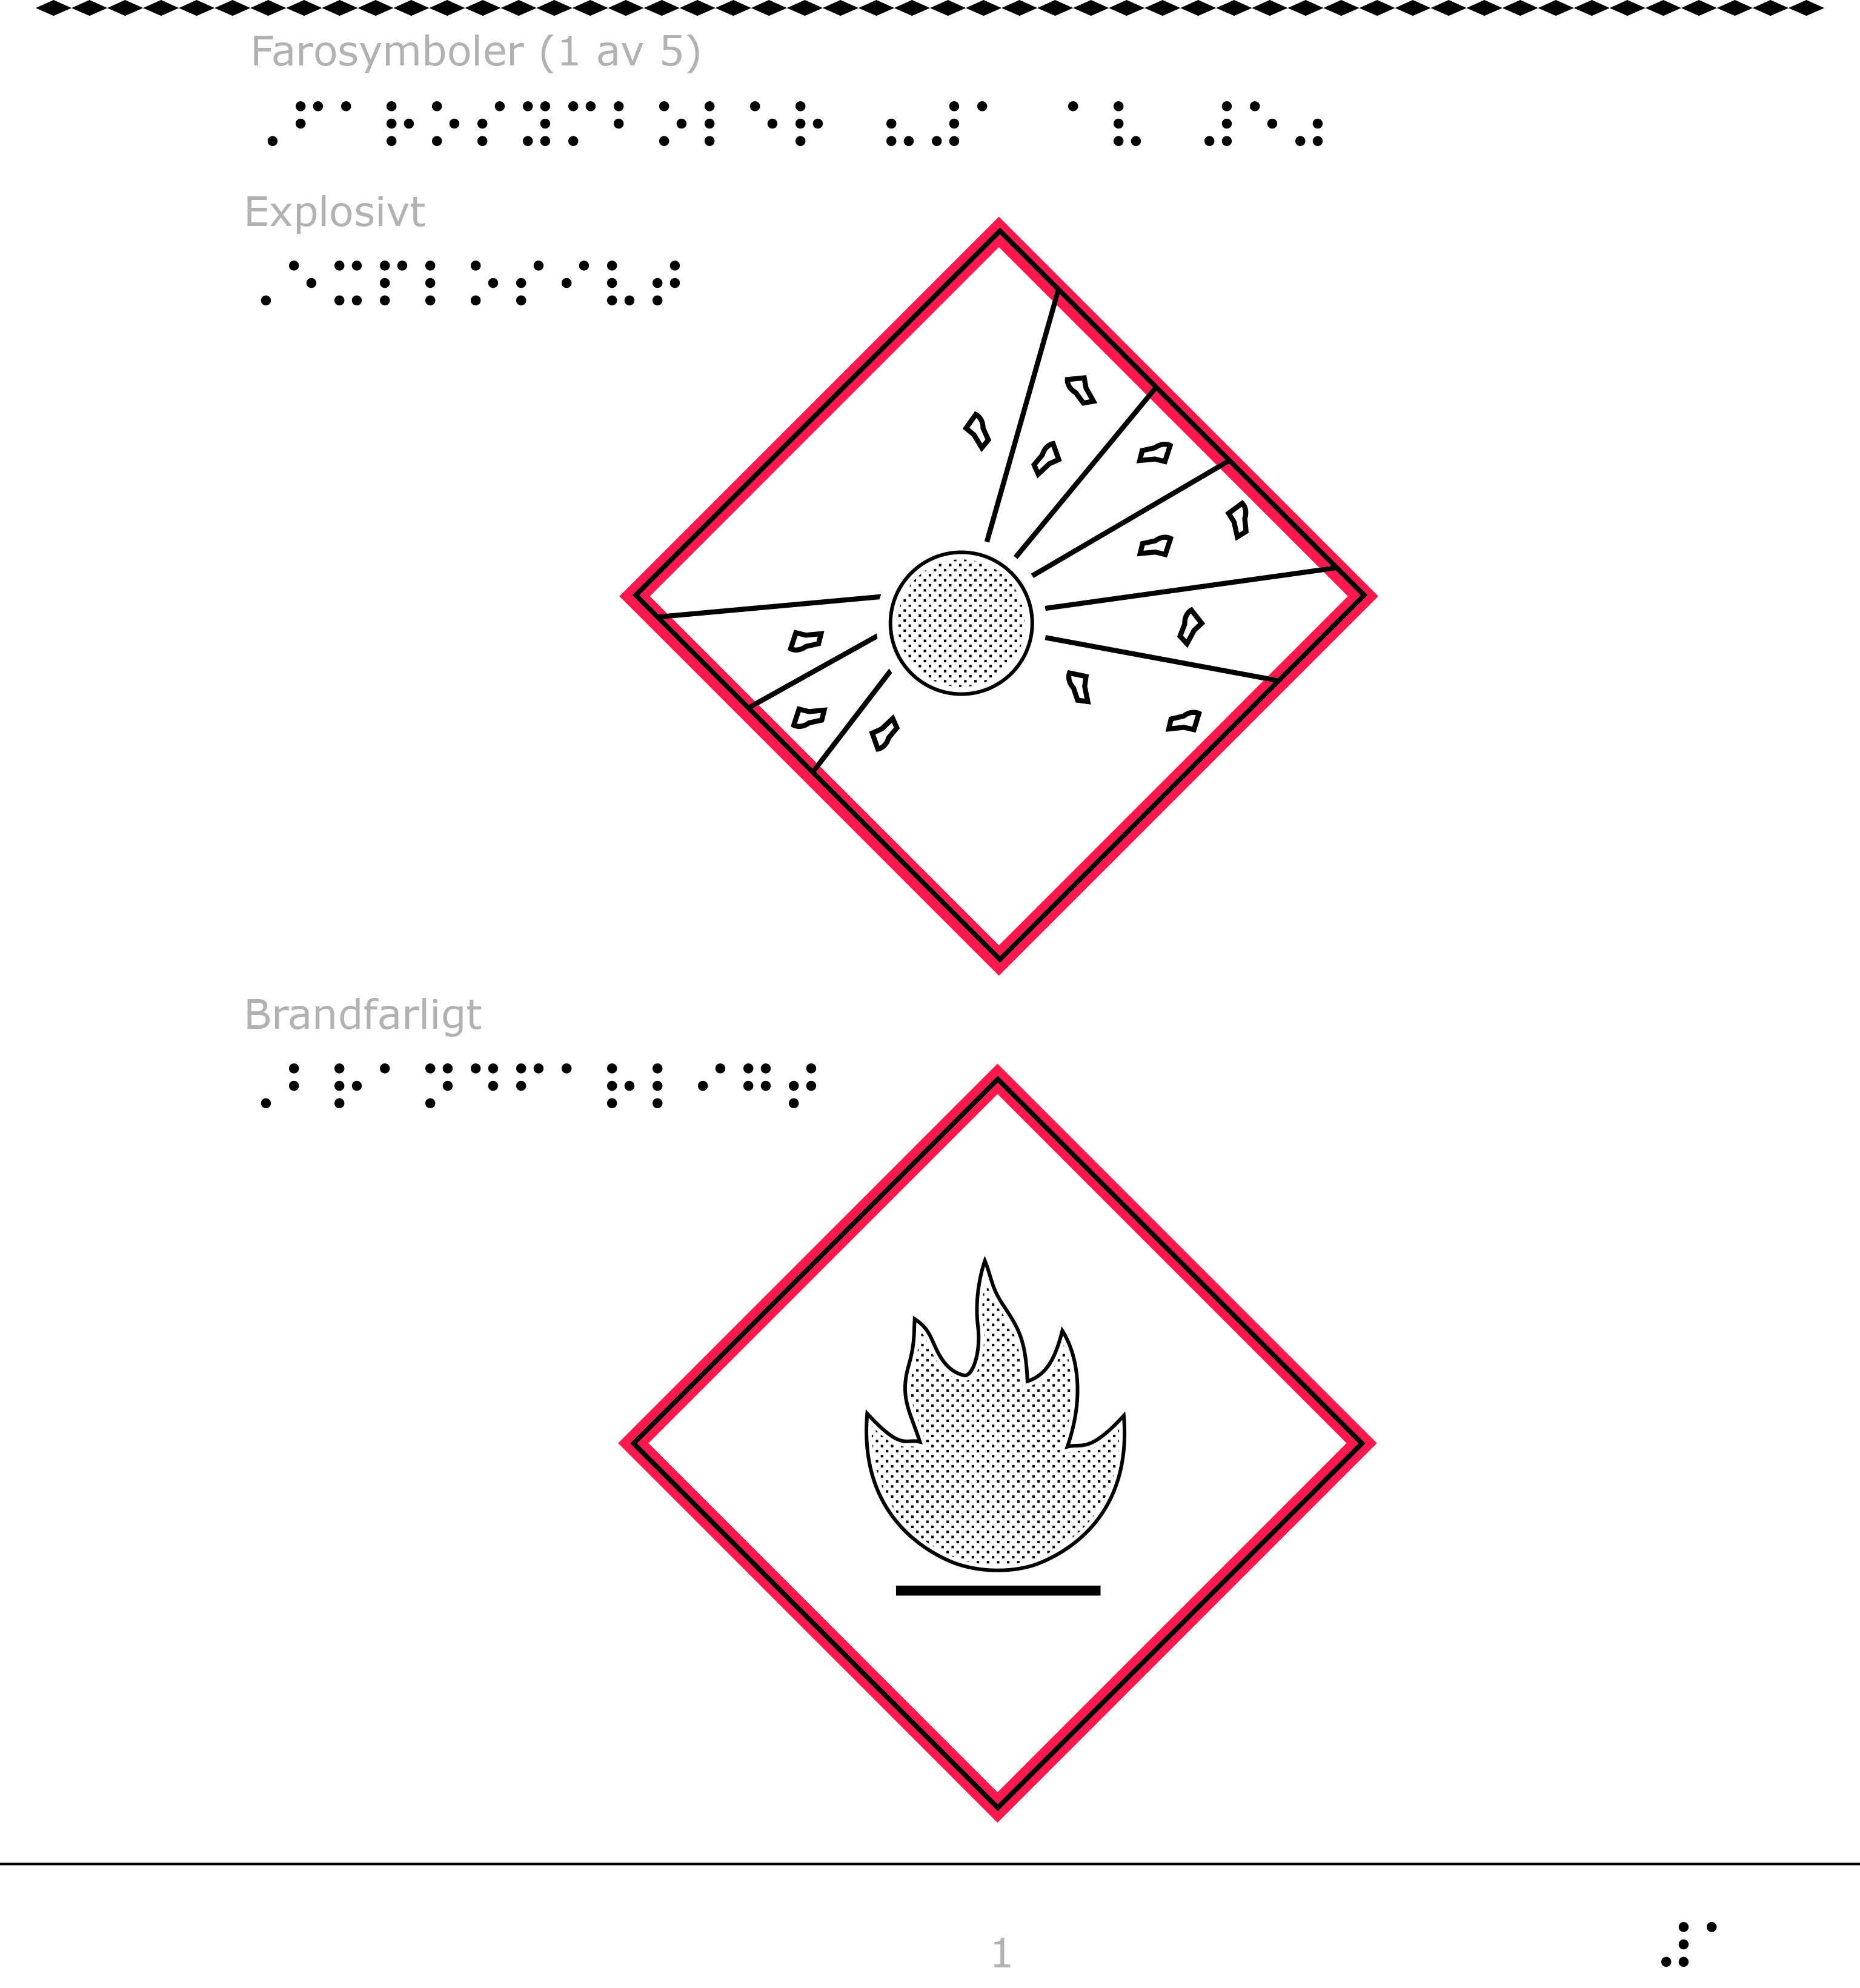 Farosymbol för explosivt och brandfarligt.